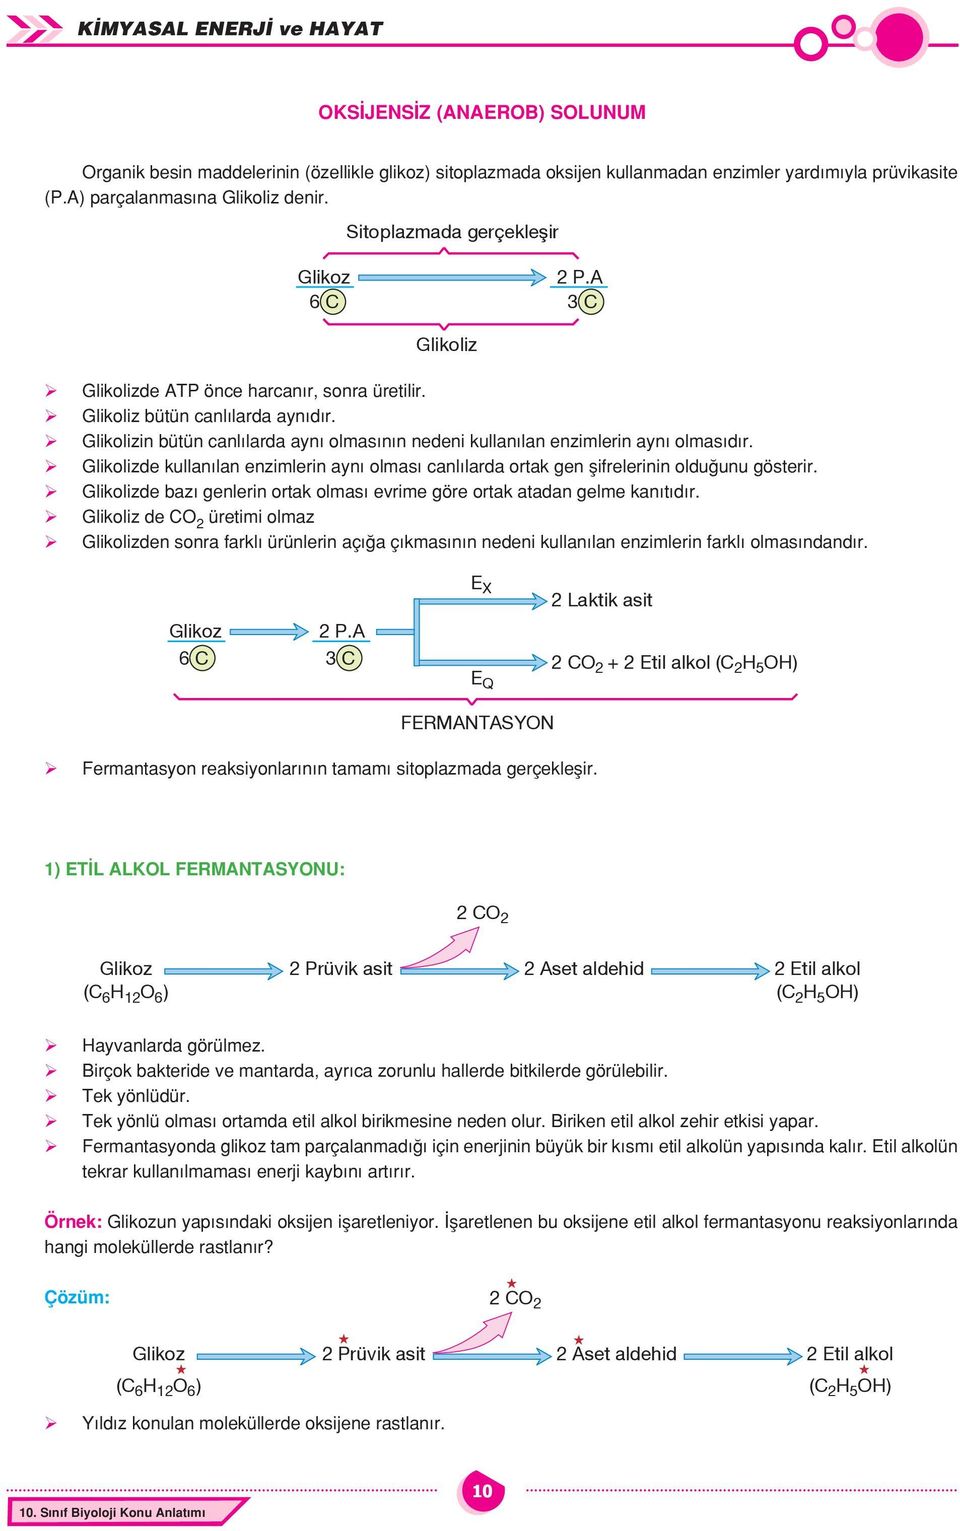 Glikolizin bütün canl larda ayn olmas n n nedeni kullan lan enzimlerin ayn olmas d r. Glikolizde kullan lan enzimlerin ayn olmas canl larda ortak gen flifrelerinin oldu unu gösterir.